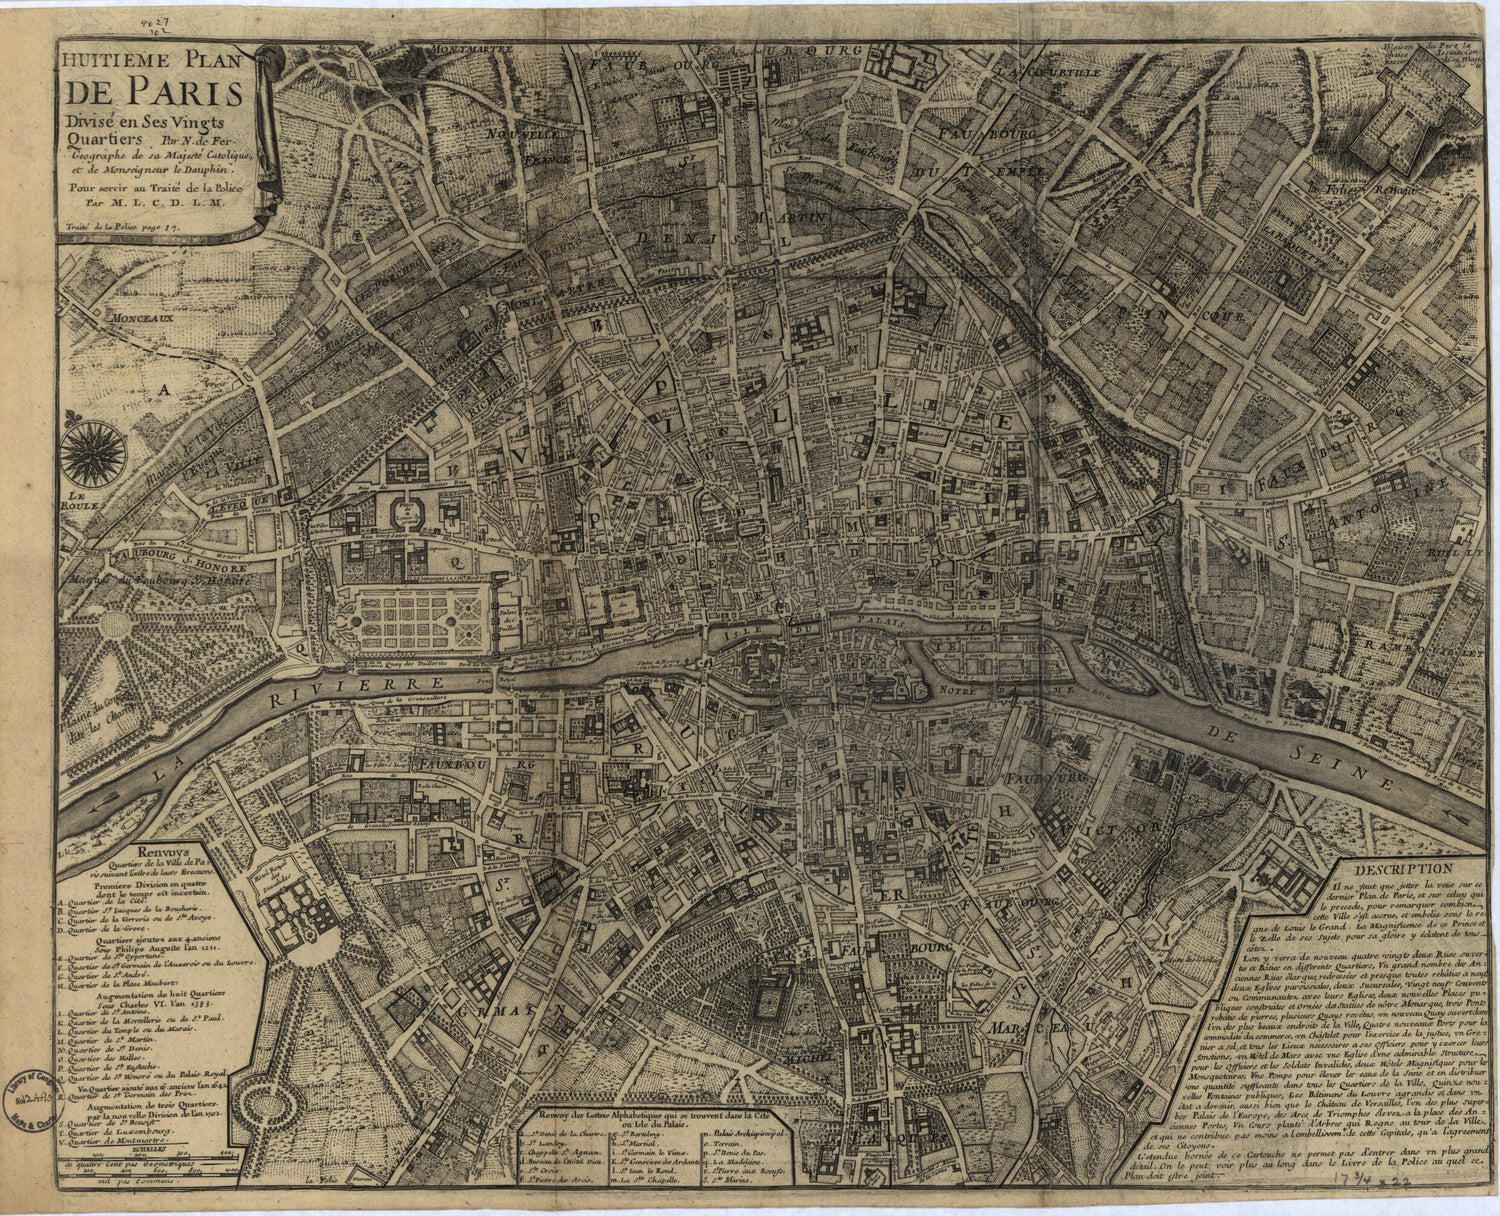 This old map of Huitieme Plan De Paris Divisé En Ses Vingts Quartiers from 1705 was created by Nicolas De Fer, Nicolas De La Mare in 1705